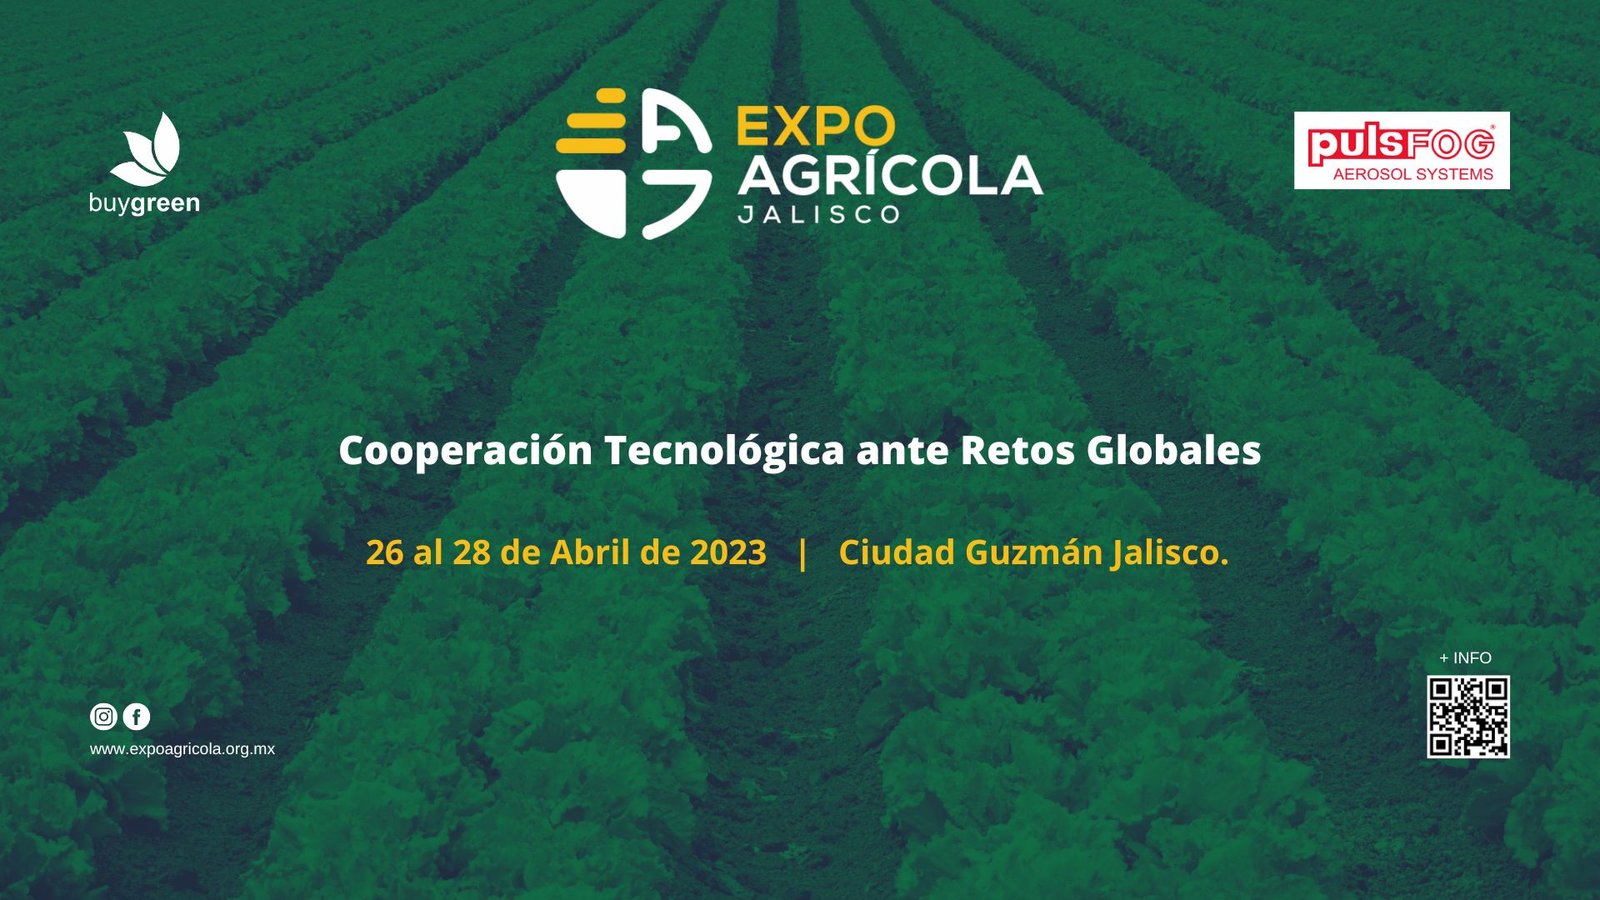 Expo Agrícola Jalisco 2023